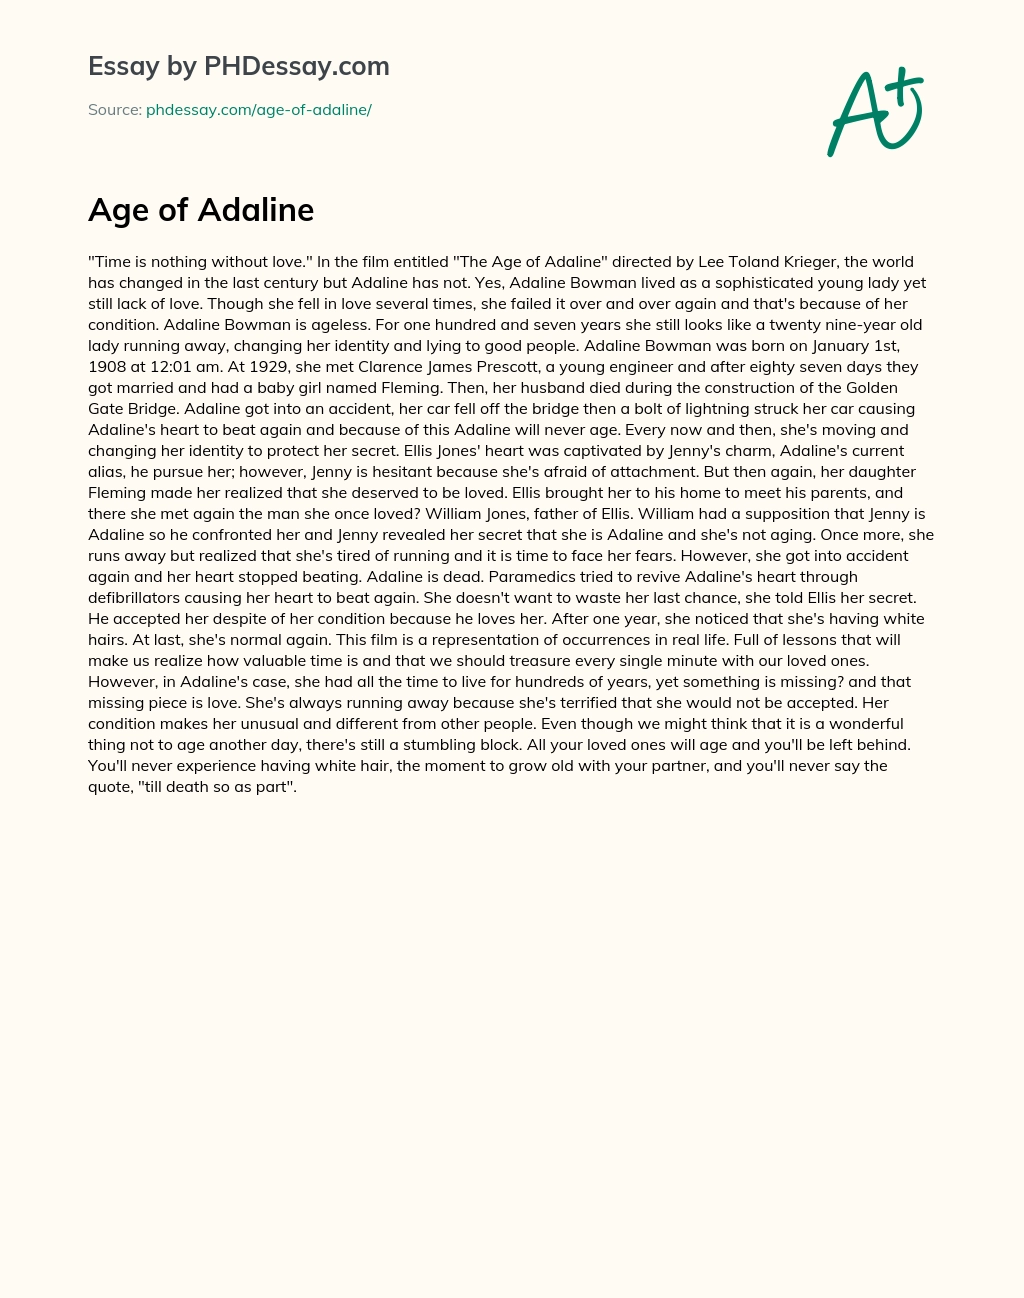 Age of Adaline essay